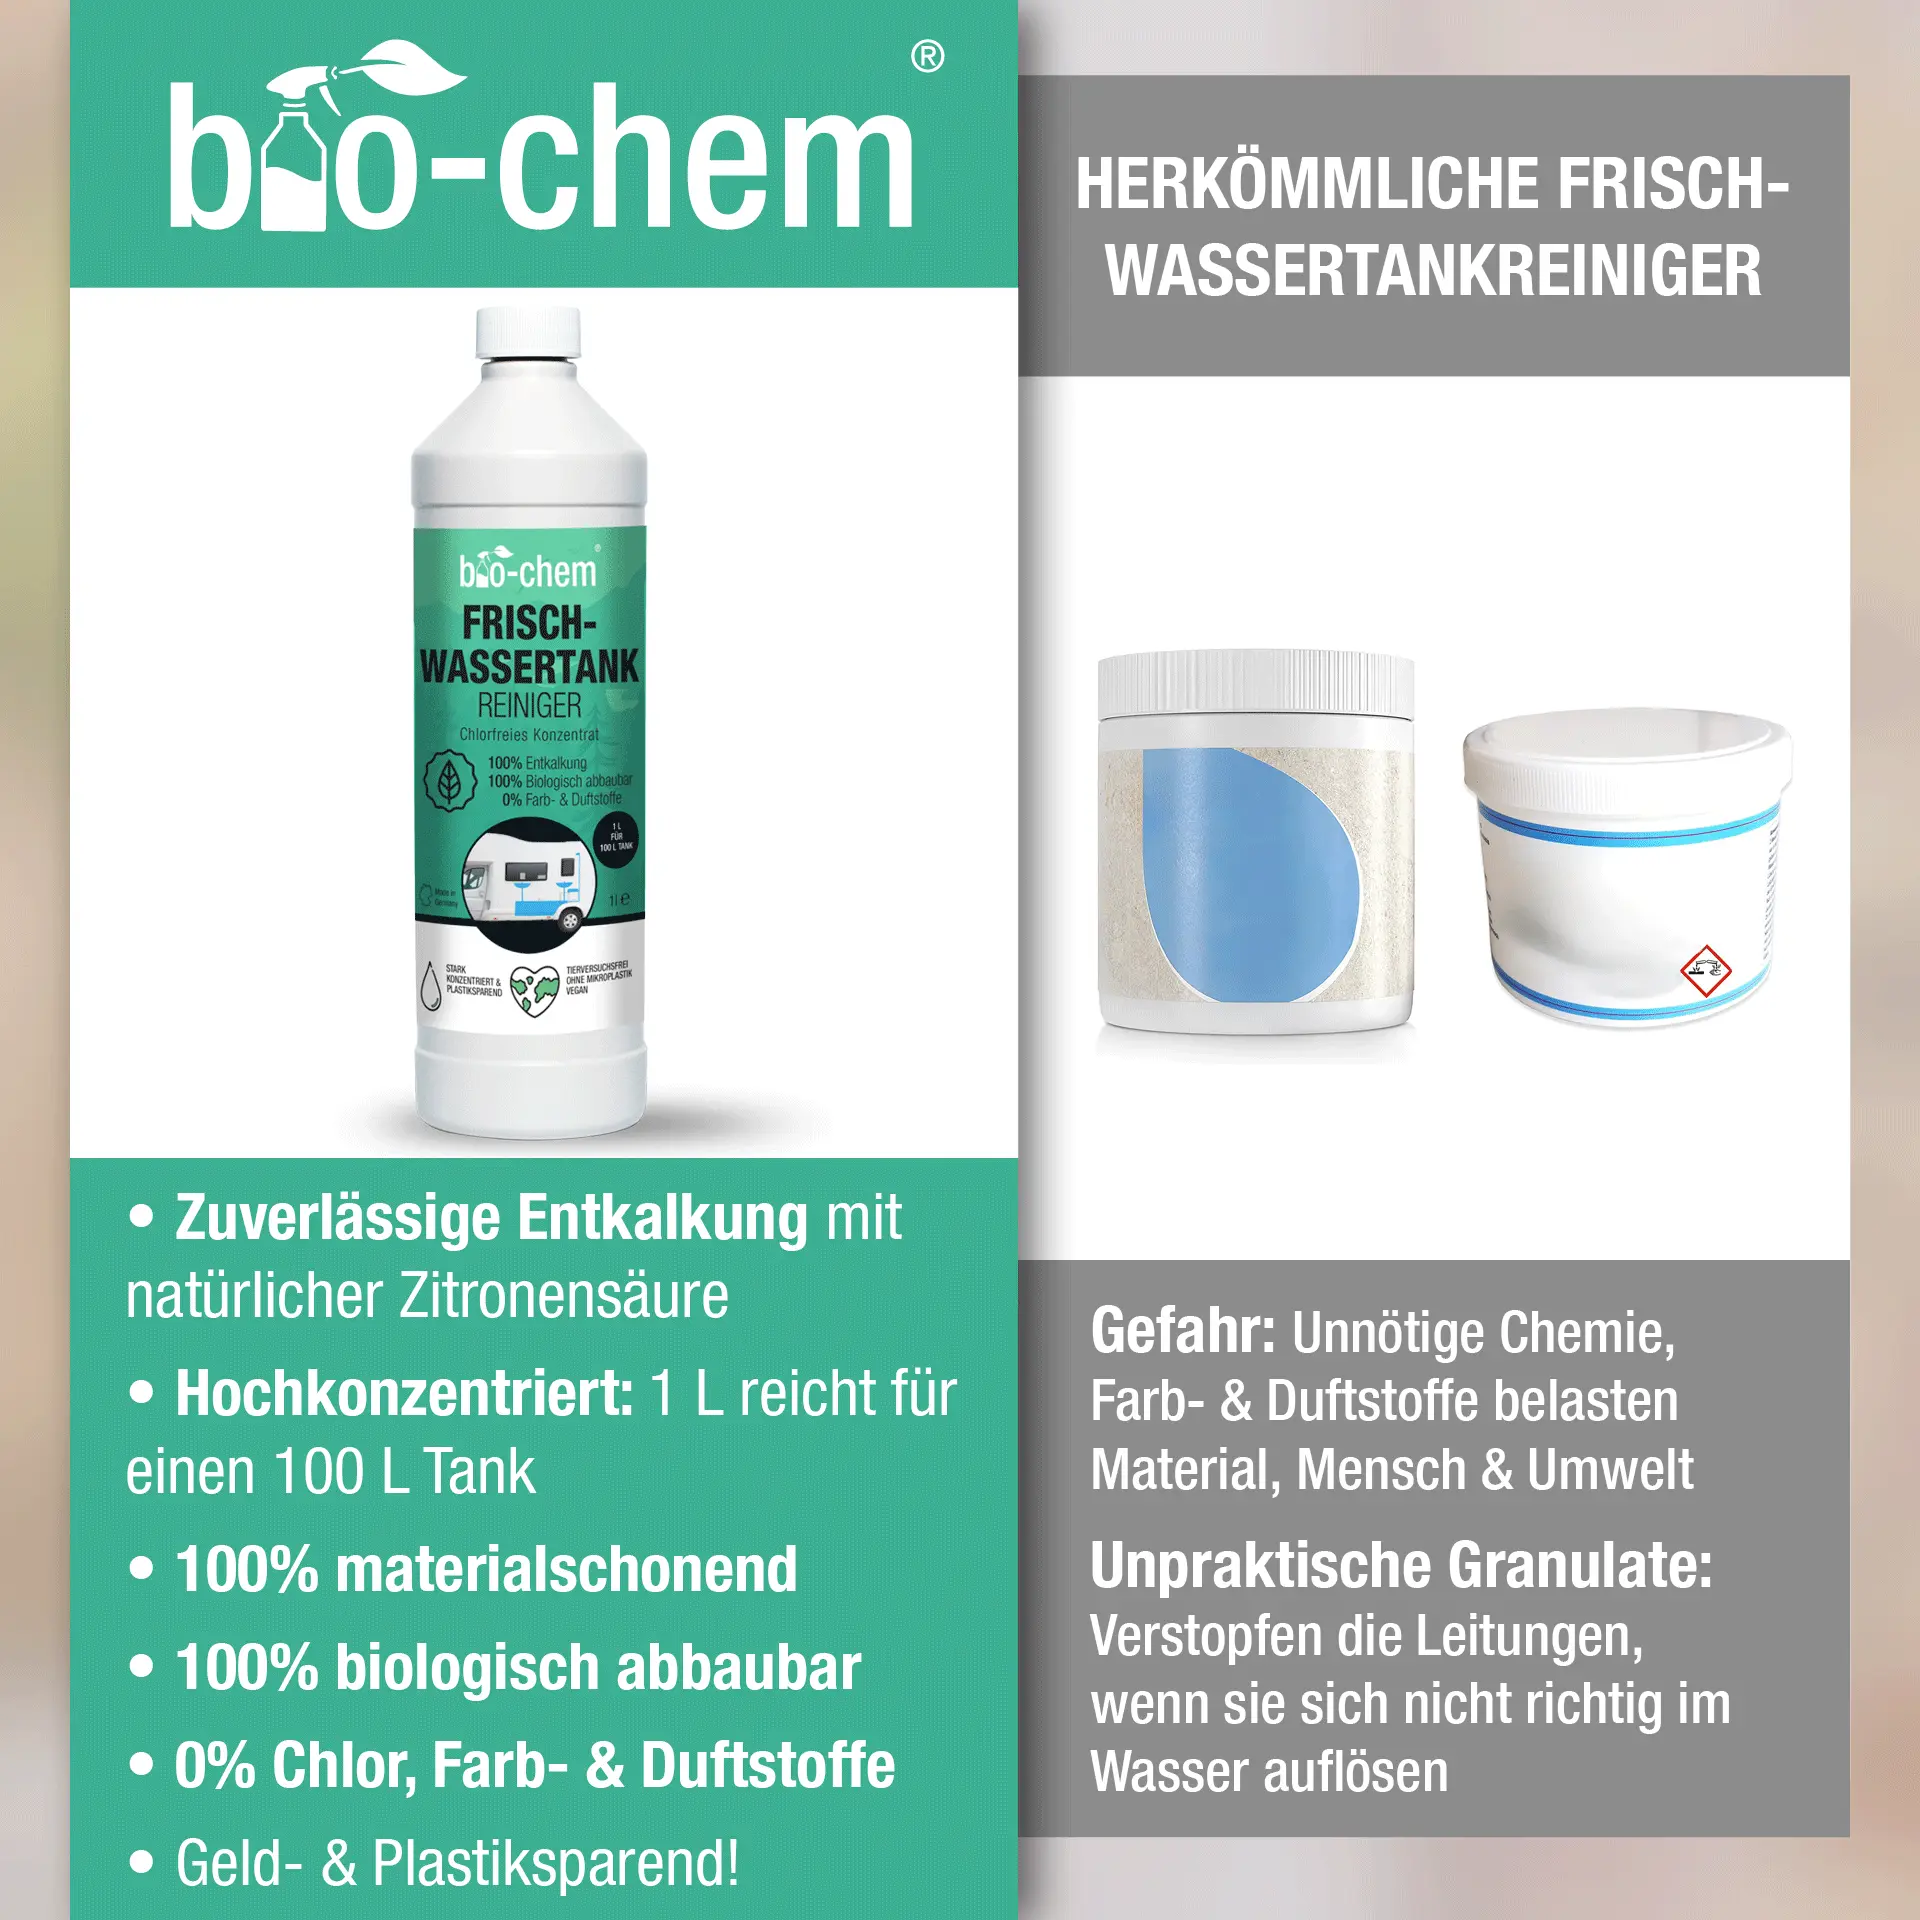 Vergleich Frischwassertank-Reiniger der Marke bio-chem